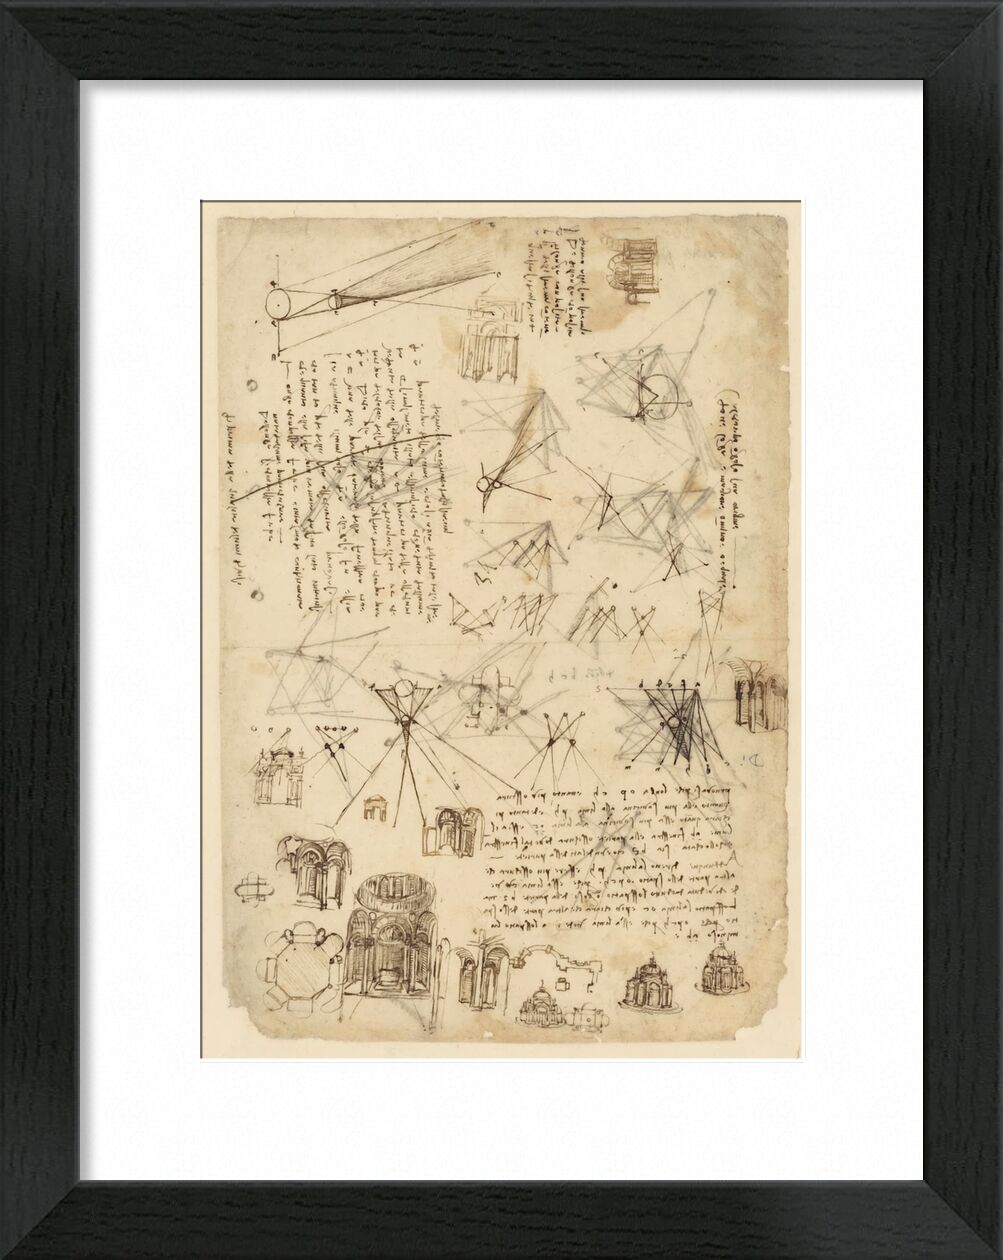 Atlantic codex von Bildende Kunst, Prodi Art, Diagramm, Zeichnung, Leonard de Vinci